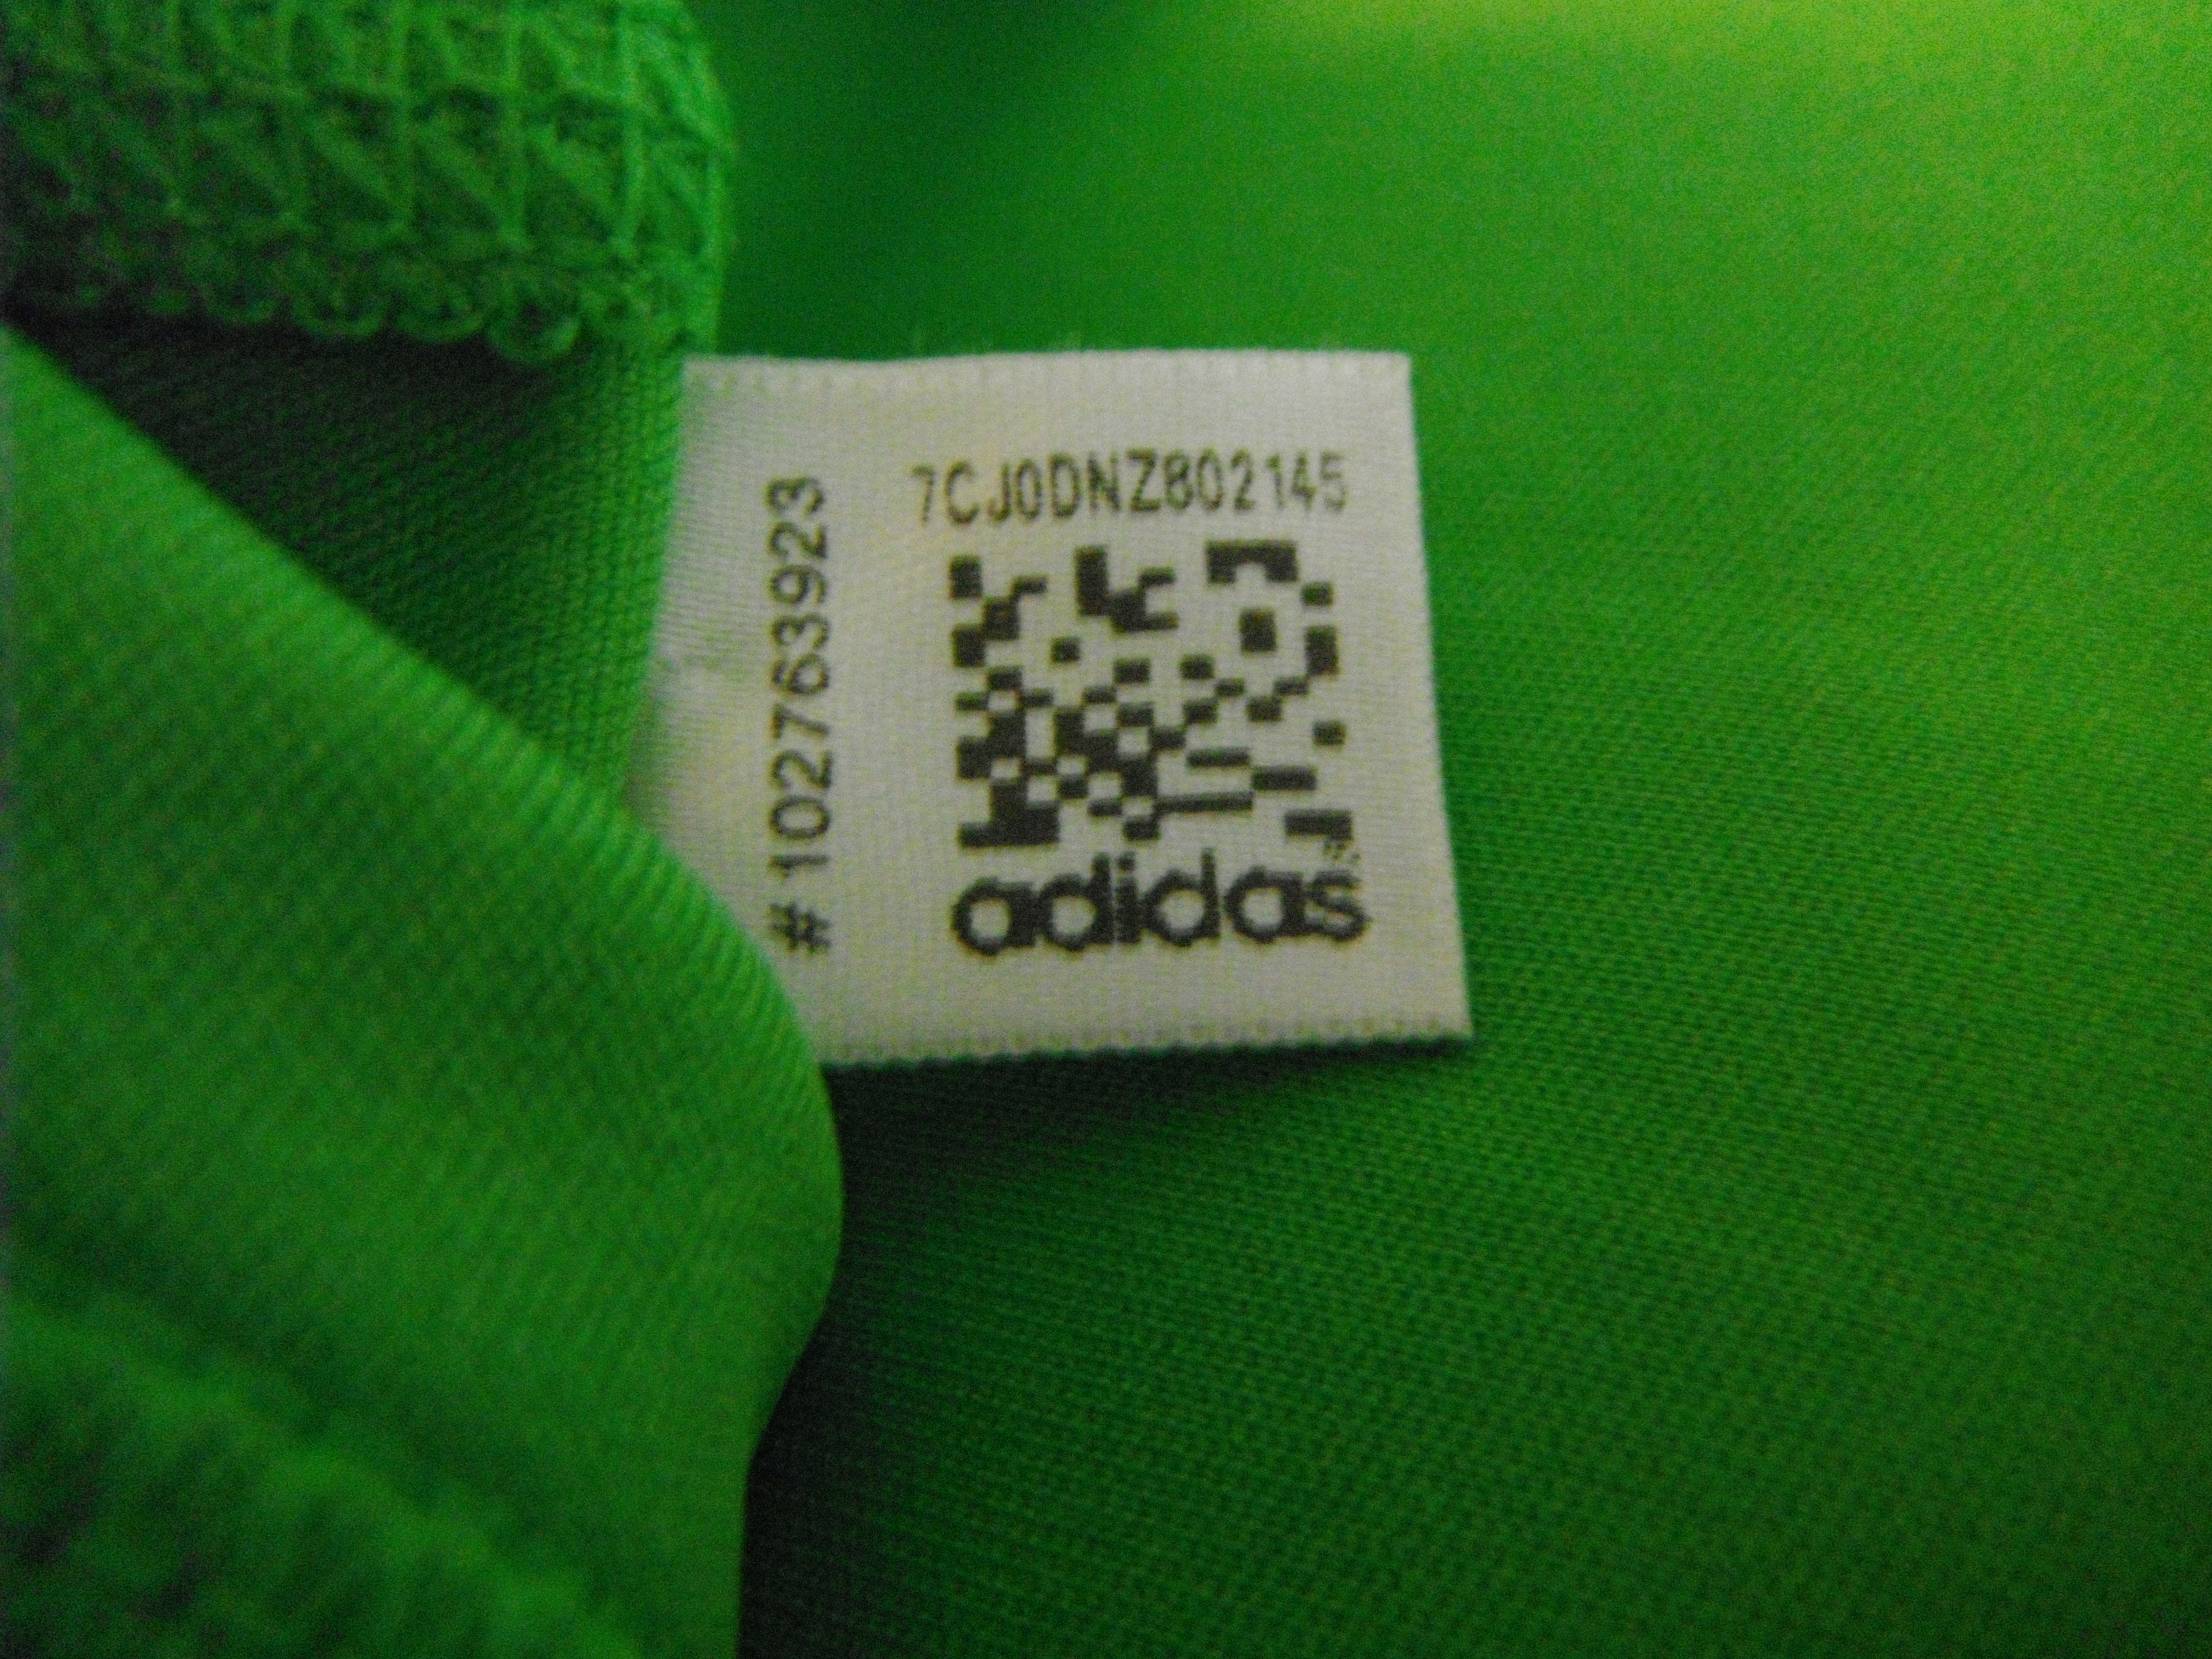 Qr код на кроссовках. Adidas QR code. QR код на одежде. Бирка с QR кодом на одежде. QR код adidas.